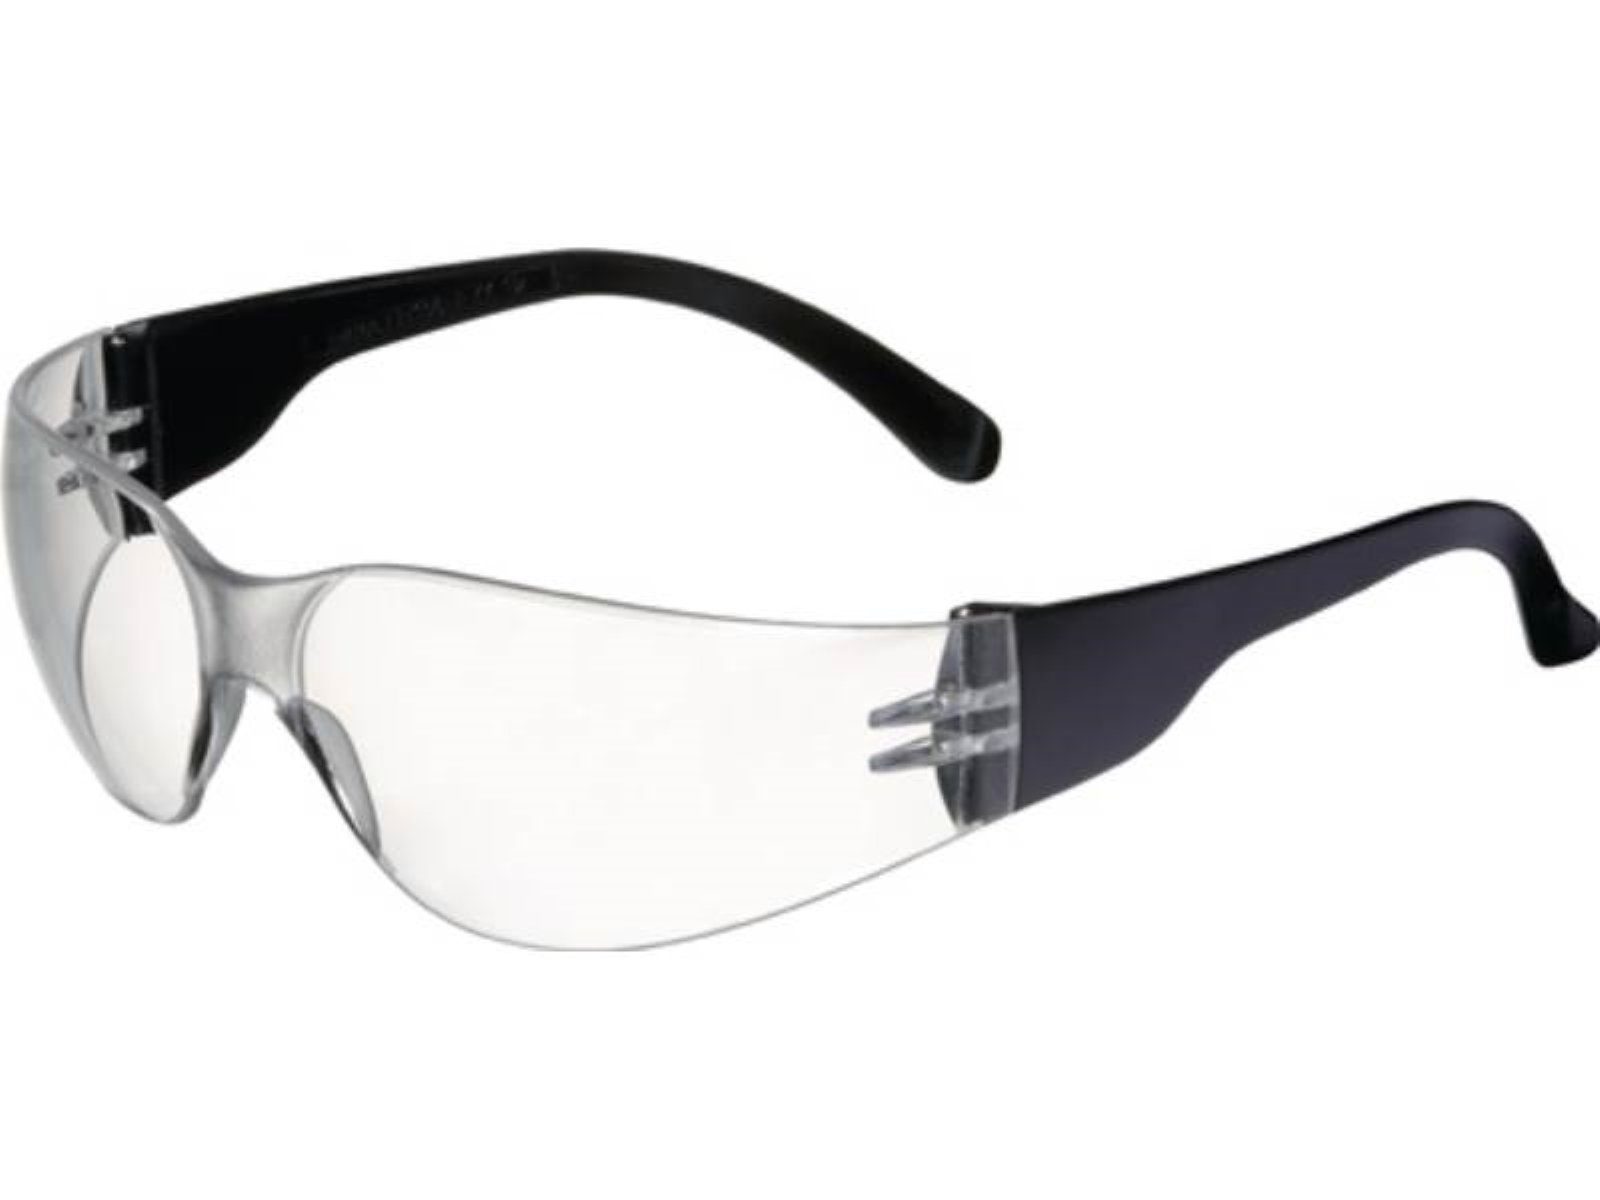 Bügel PC Arbeitsschutzbrille 166 EN Basic PROMAT PROM schwarz,Scheibe Schutzbrille Daylight klar